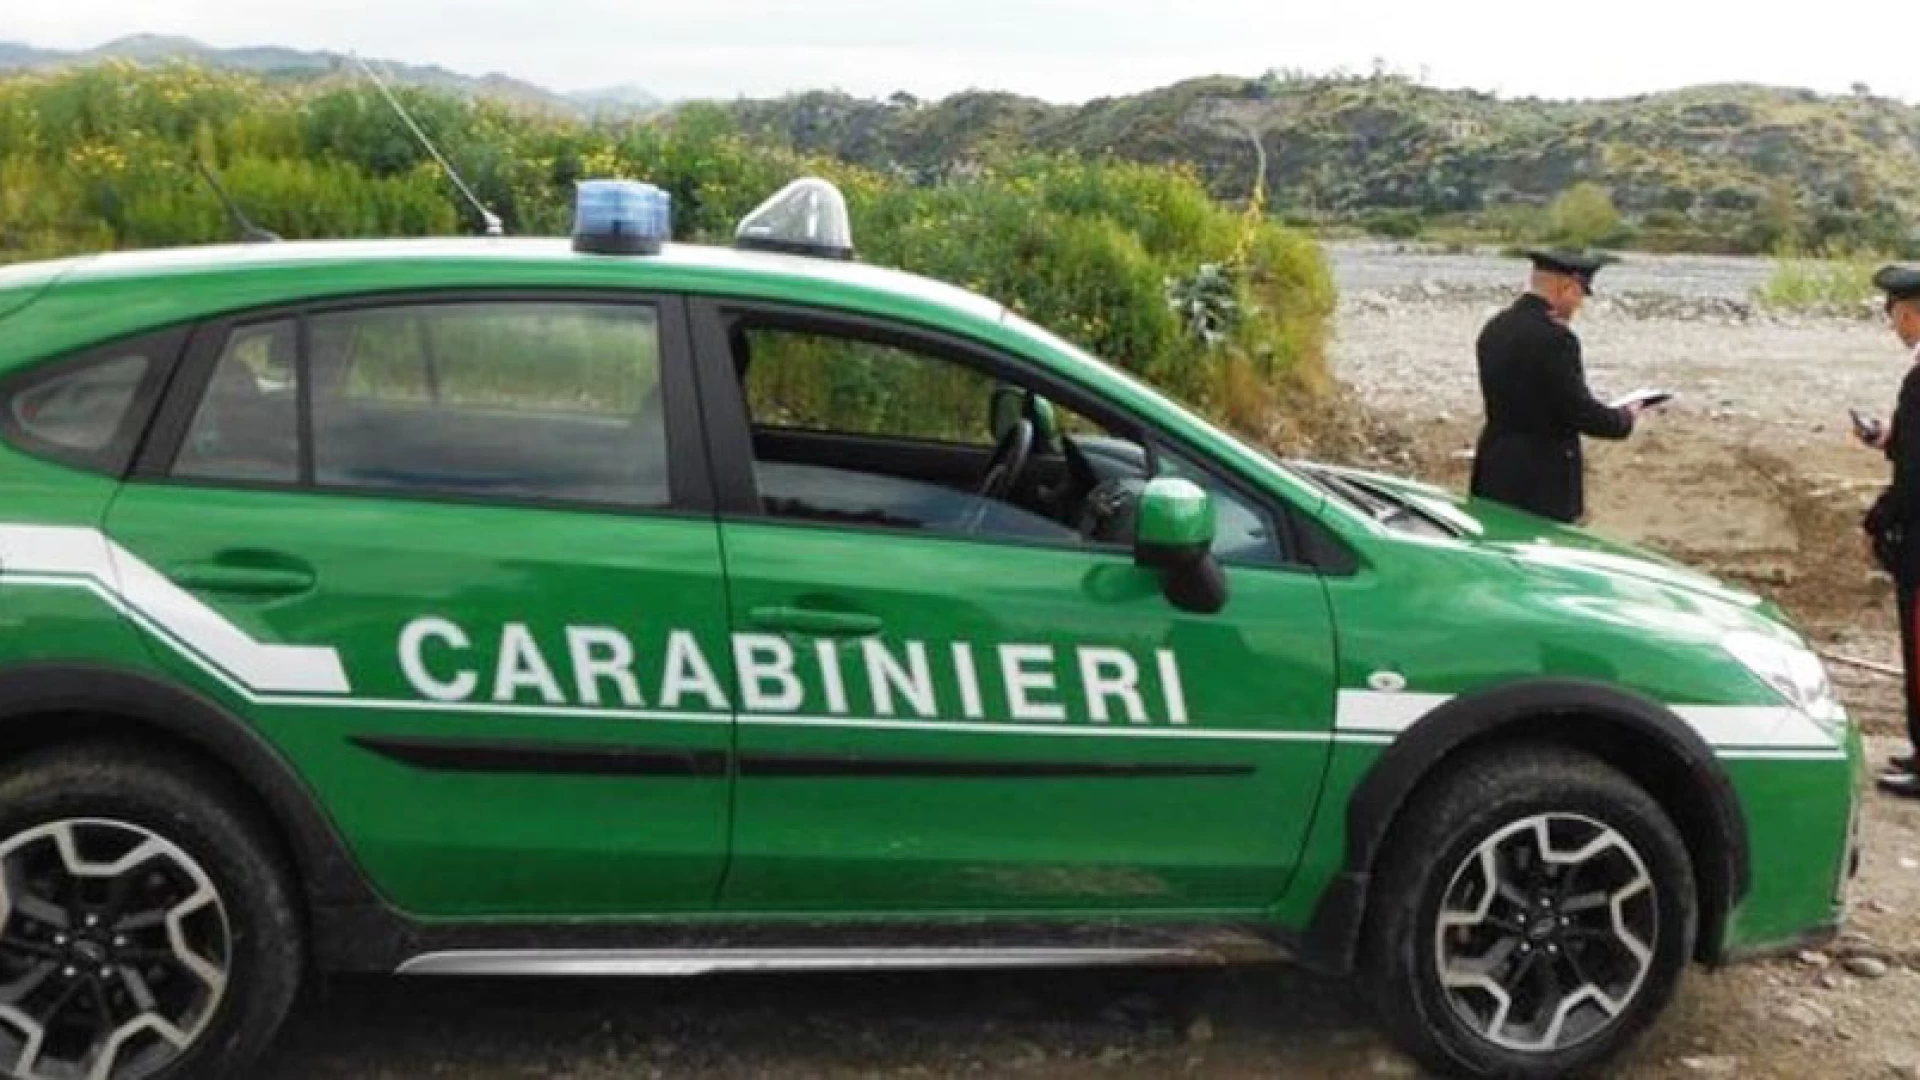 Isernia: 	Carabinieri in azione a tutela dei lavoratori e dell’ambiente, scattano denunce e sequestri.